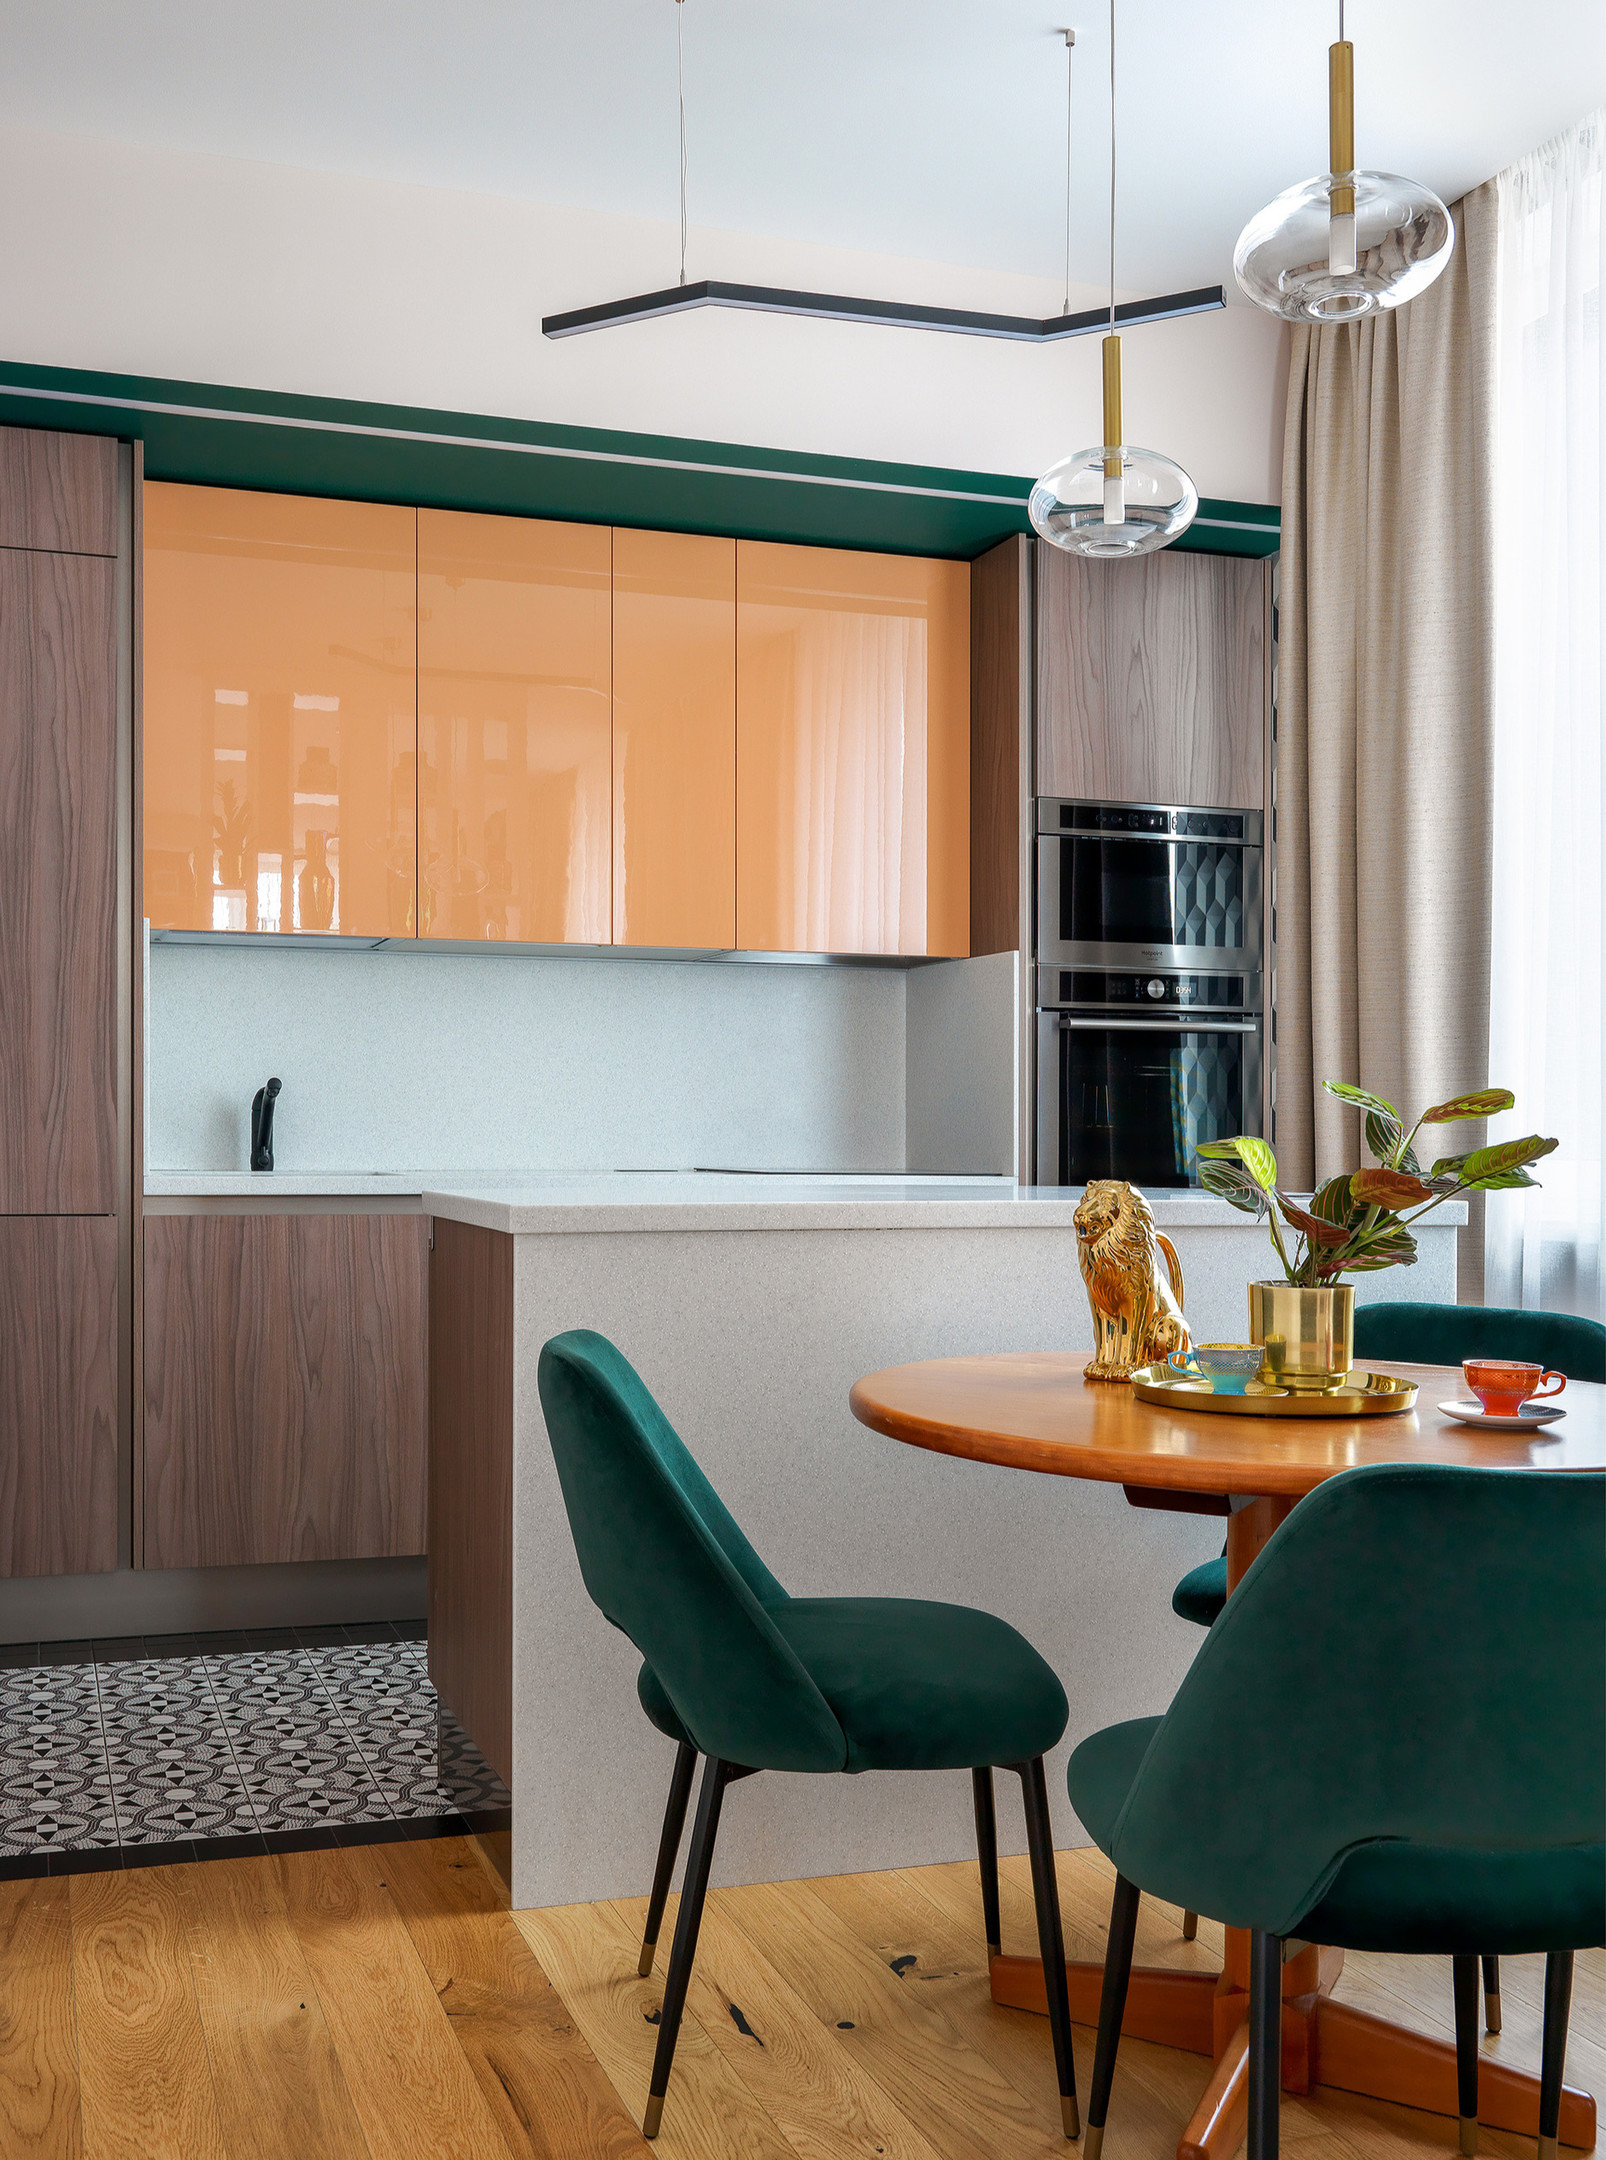 Màu sắc và vật liệu nội thất cũng là yếu tố quyết định đến tính thẩm mỹ của phòng bếp. Ở đây là sự kết hợp màu nâu gỗ, cam đào và xanh ngọc lục bảo, thêm vào bề mặt sáng bóng của hệ tủ bếp trên cho cảm giác tươi mới hơn.